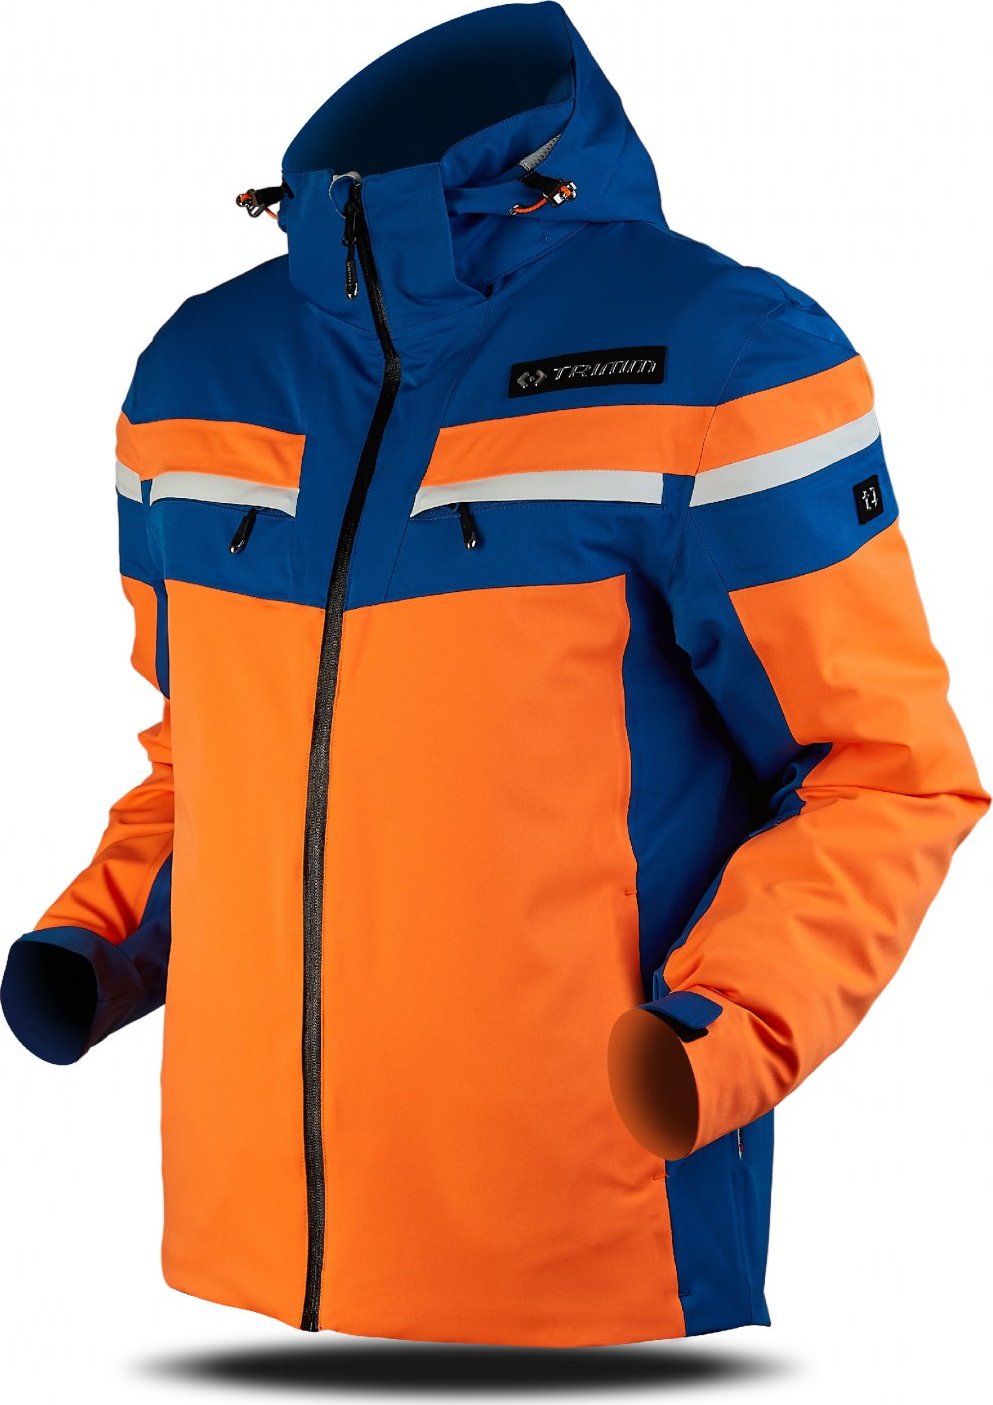 Pánská lyžařská bunda TRIMM Fusion oranžová Velikost: L, Barva: signal orange/navy/white